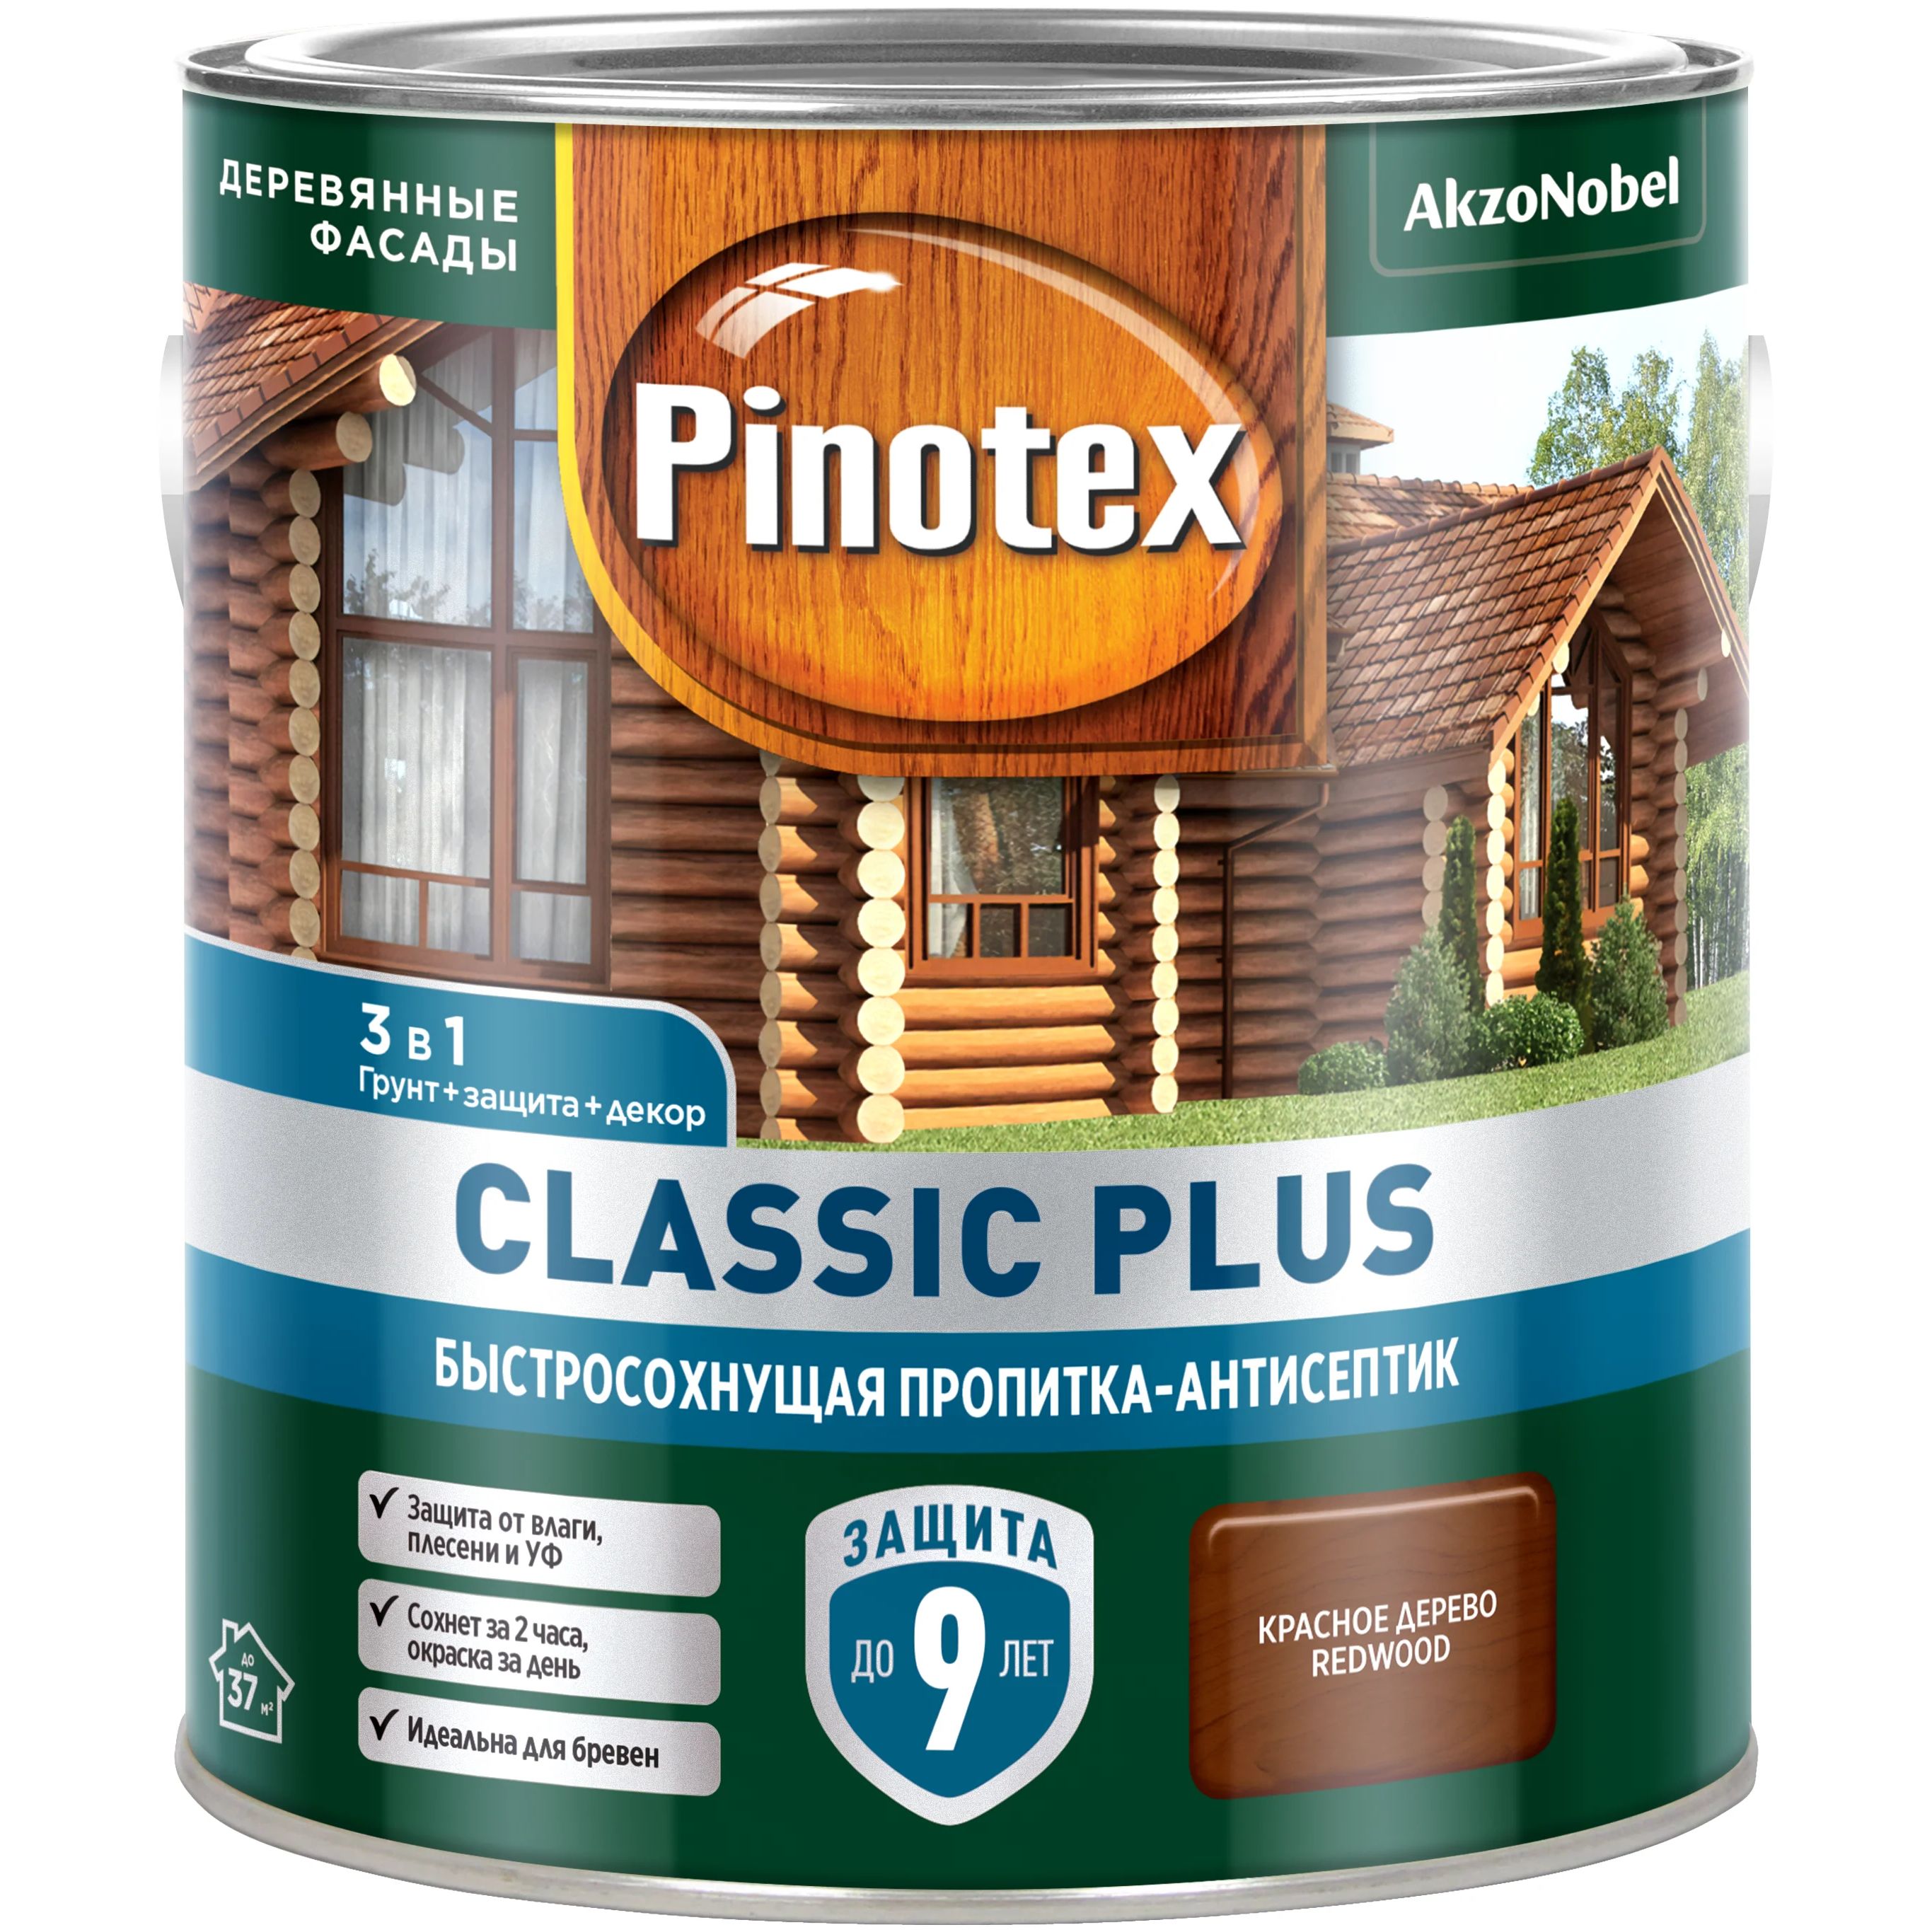 Пропитка-антисептик Pinotex Classic Plus 3 в 1, быстросохнущая,красное дерево, 2,5 л пропитка антисептик pinotex classic plus красное дерево 9л [5479762]